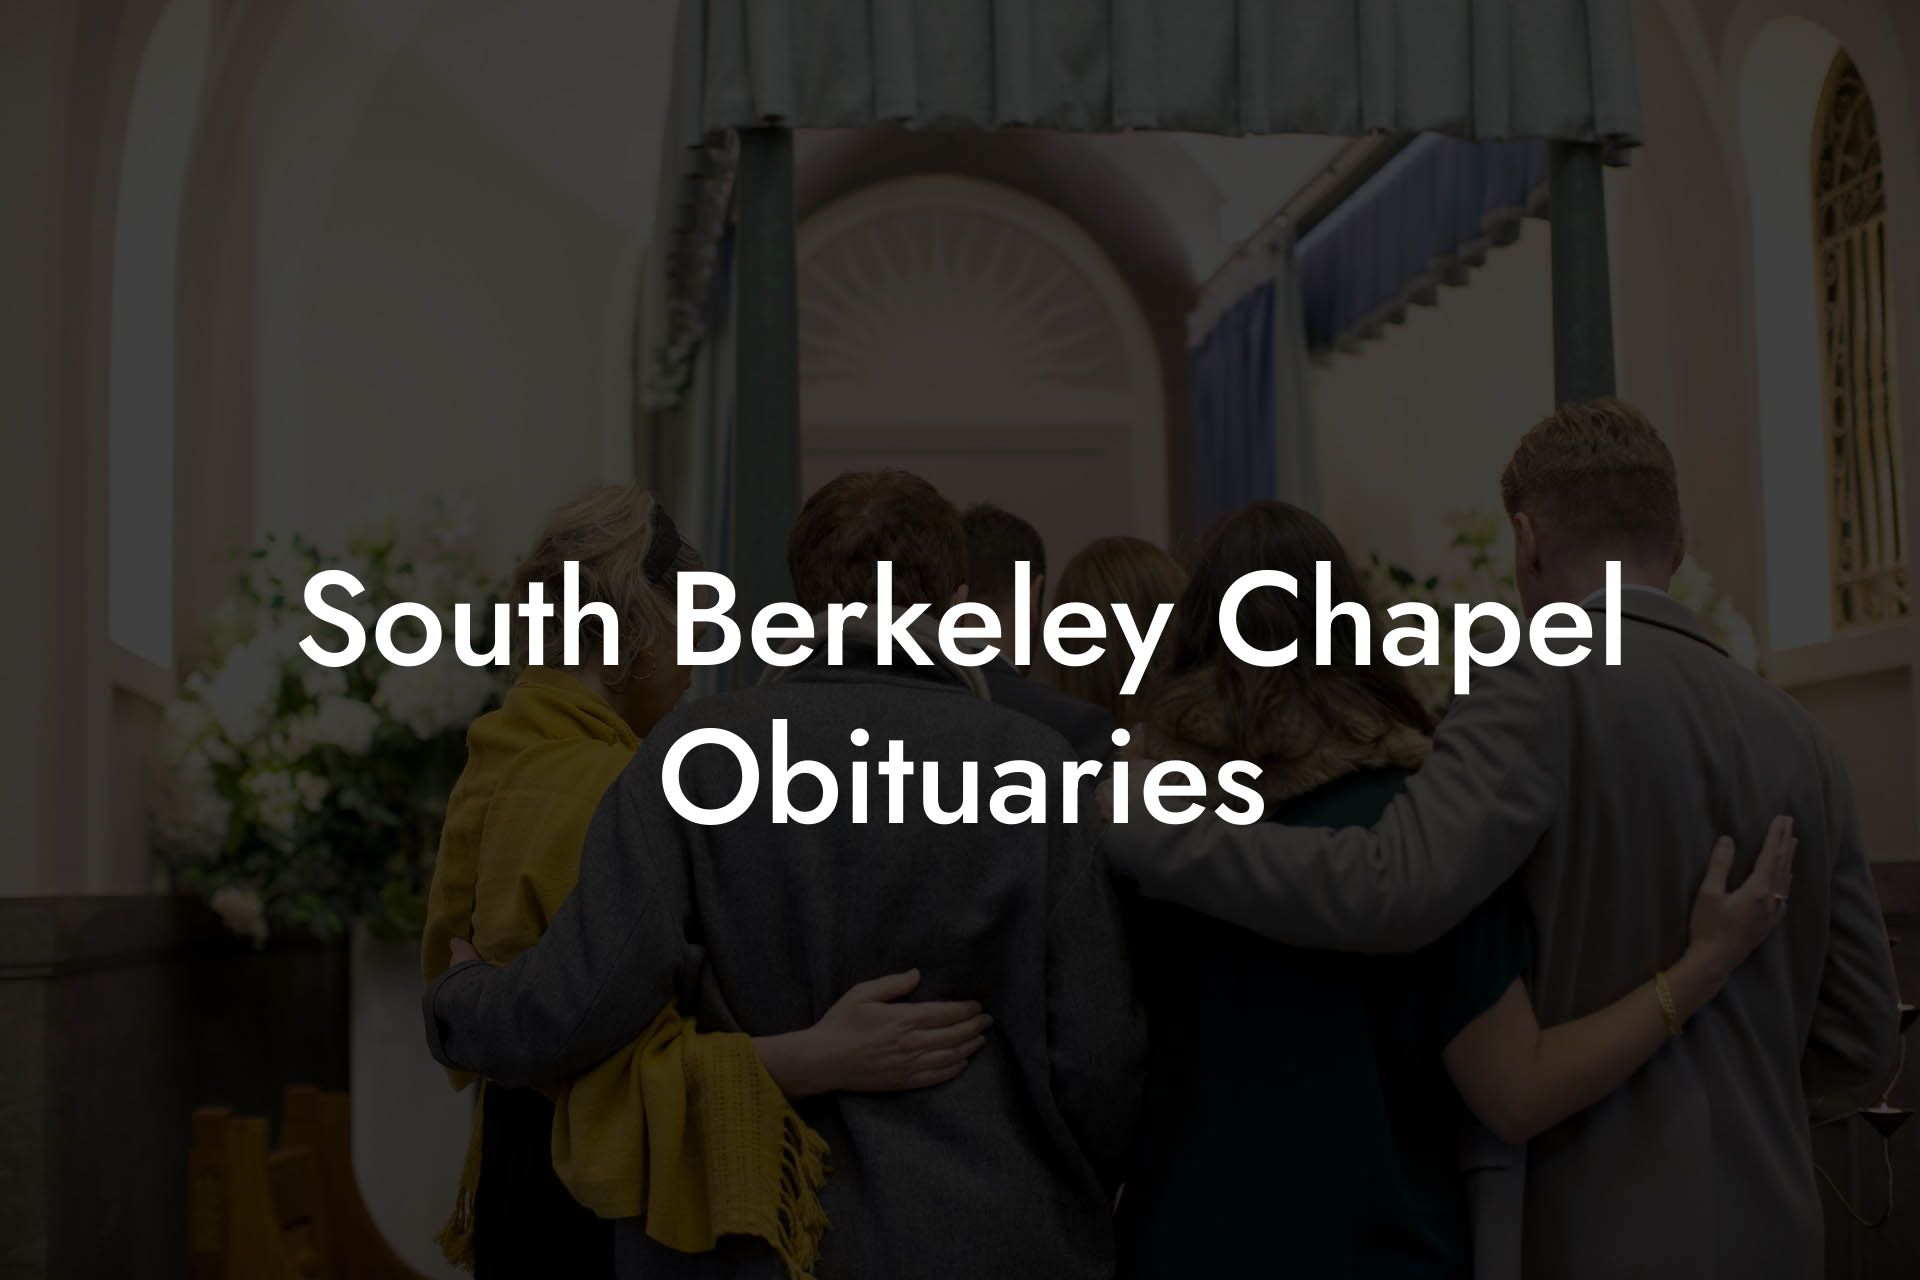 South Berkeley Chapel Obituaries